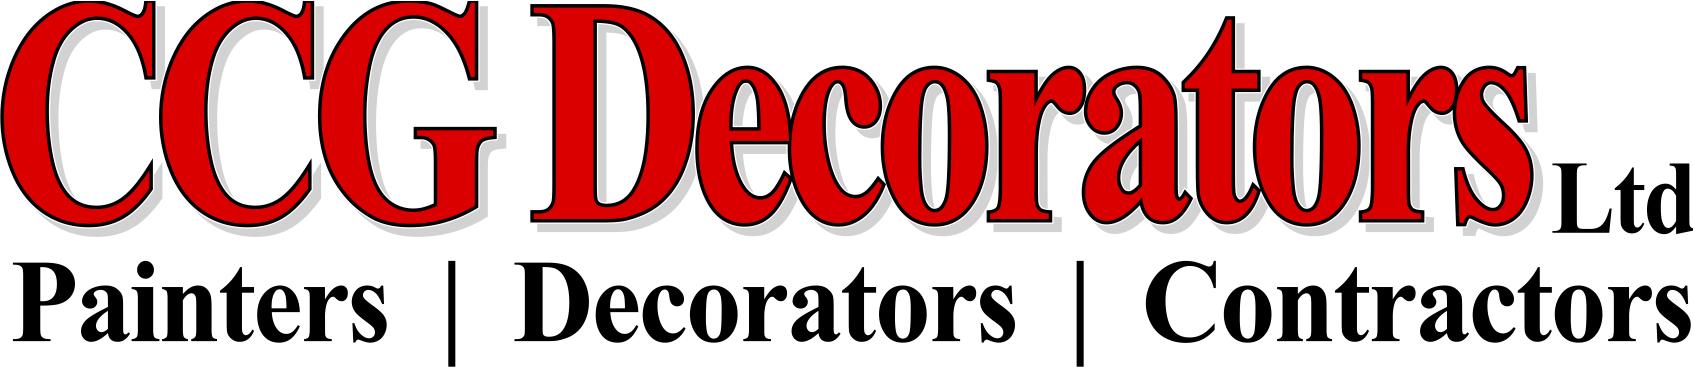 CCG DECORATORS LTD